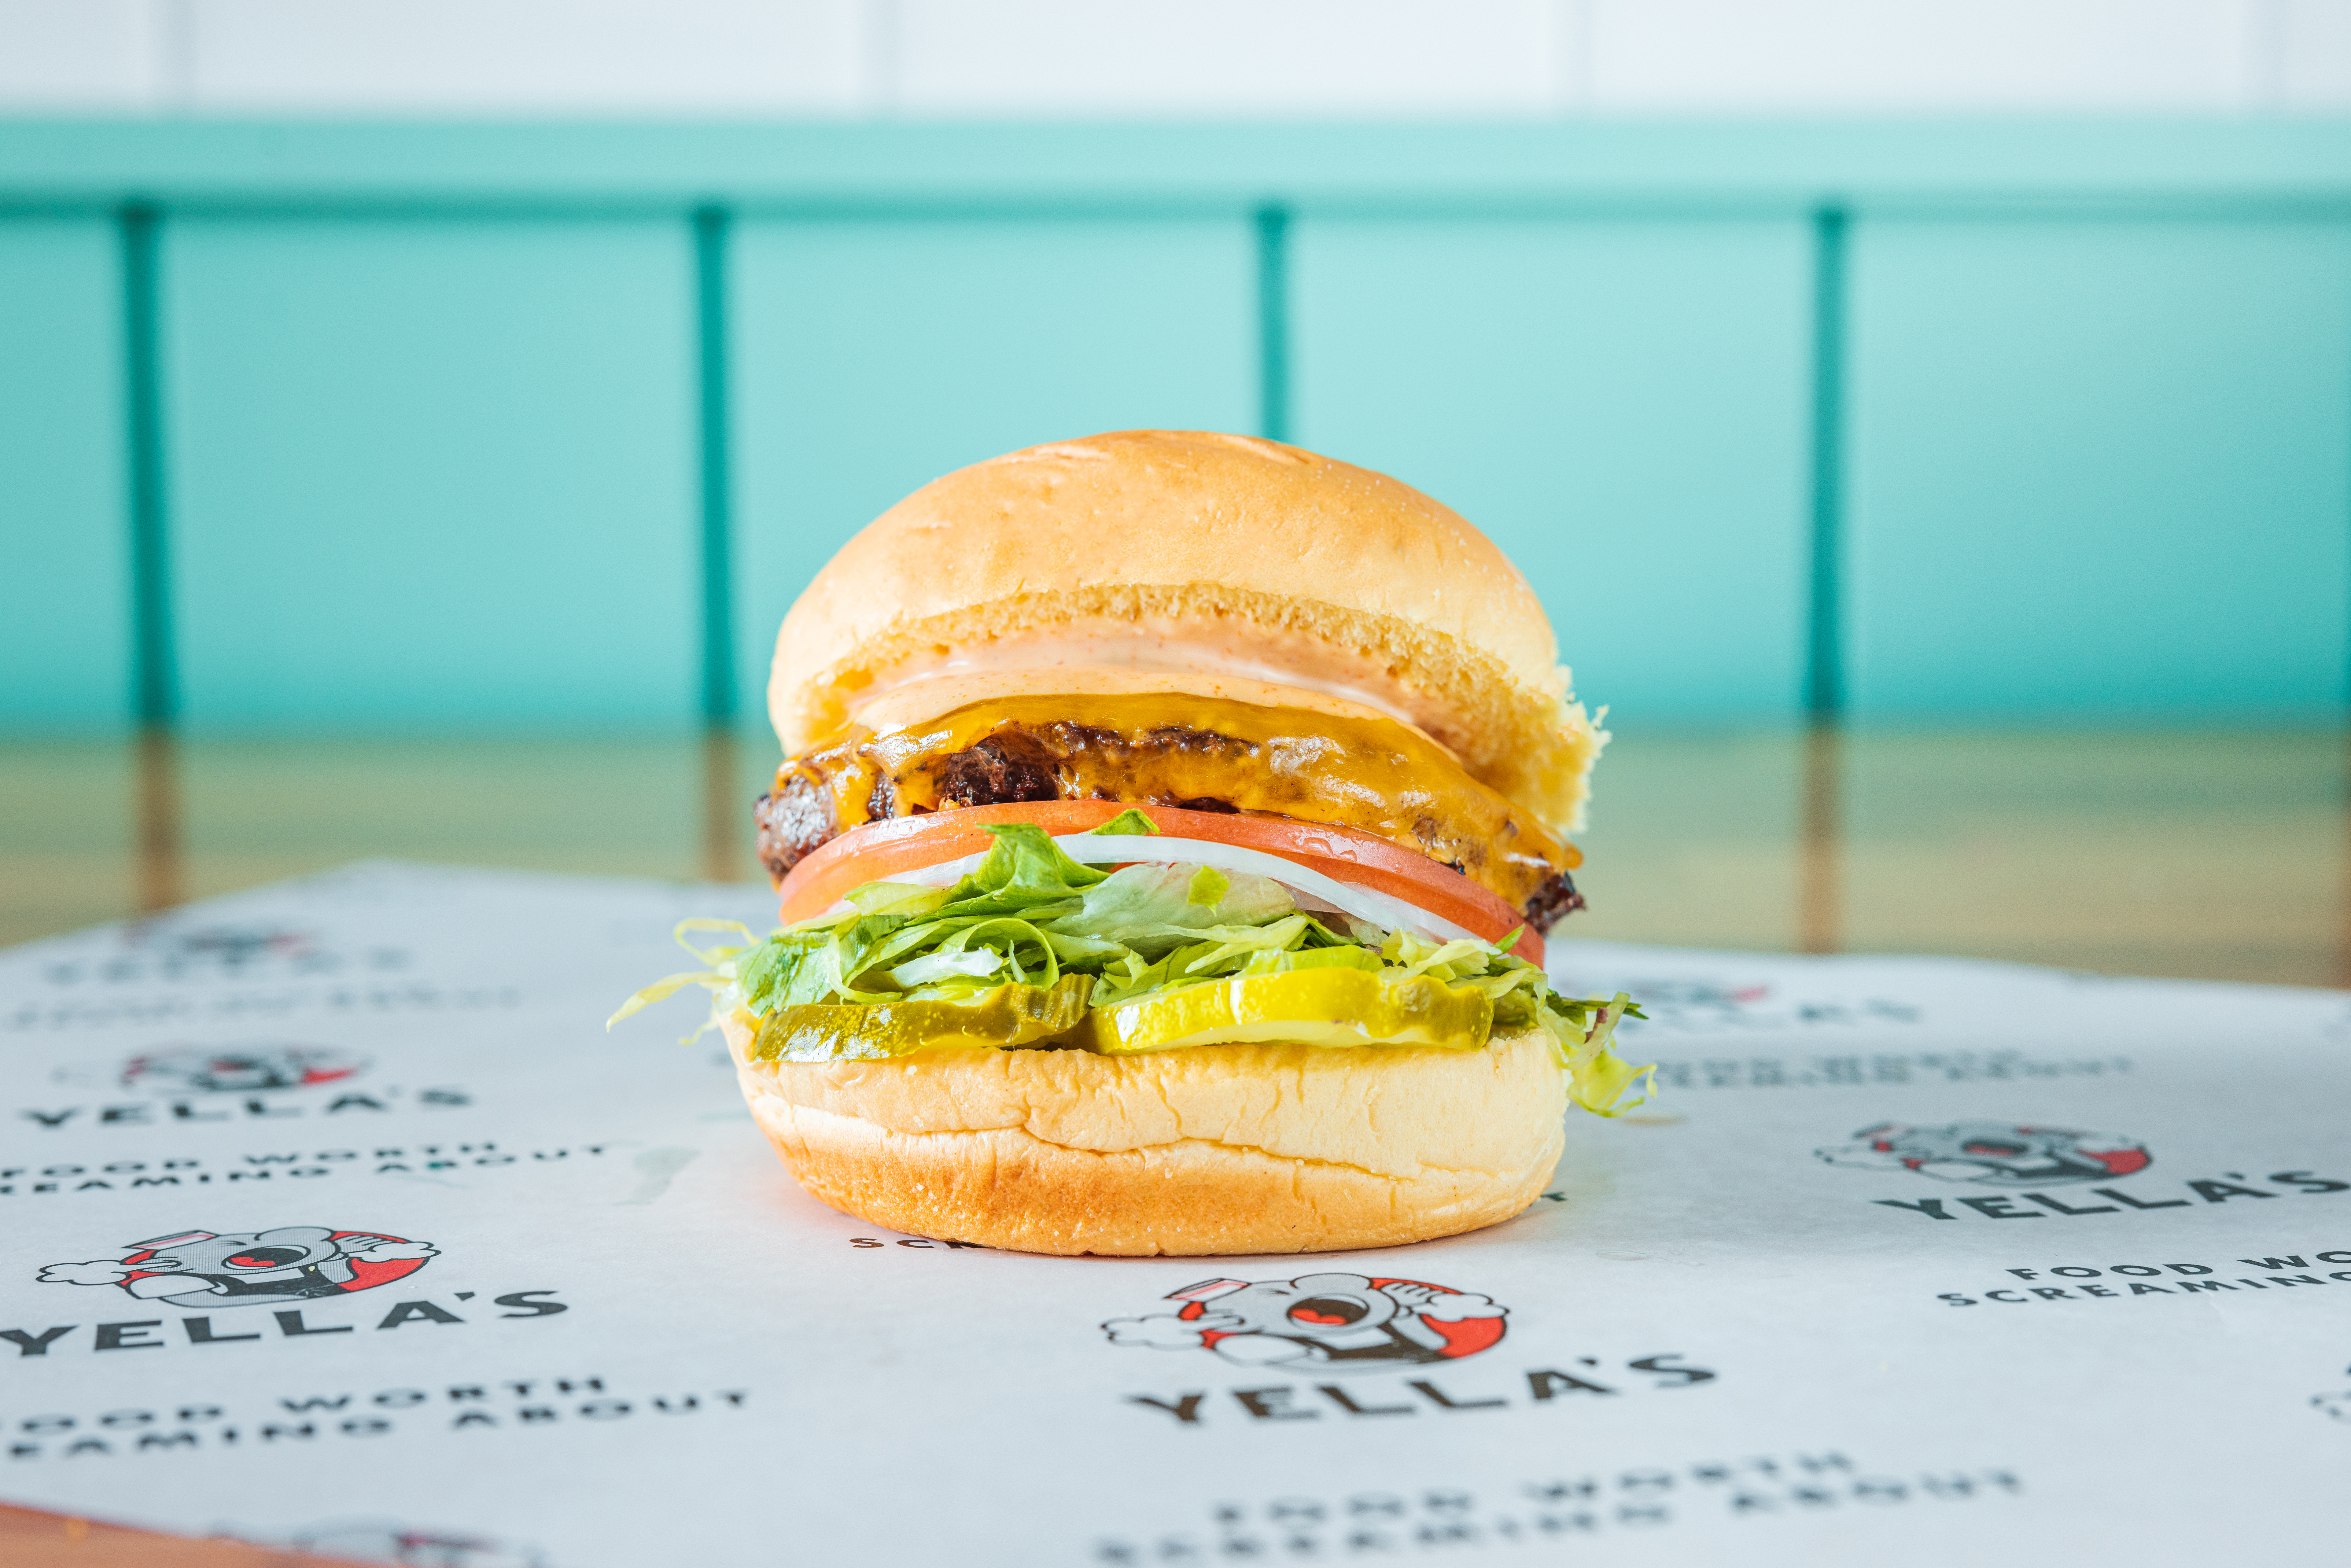 The Yella Burger $8.52 *